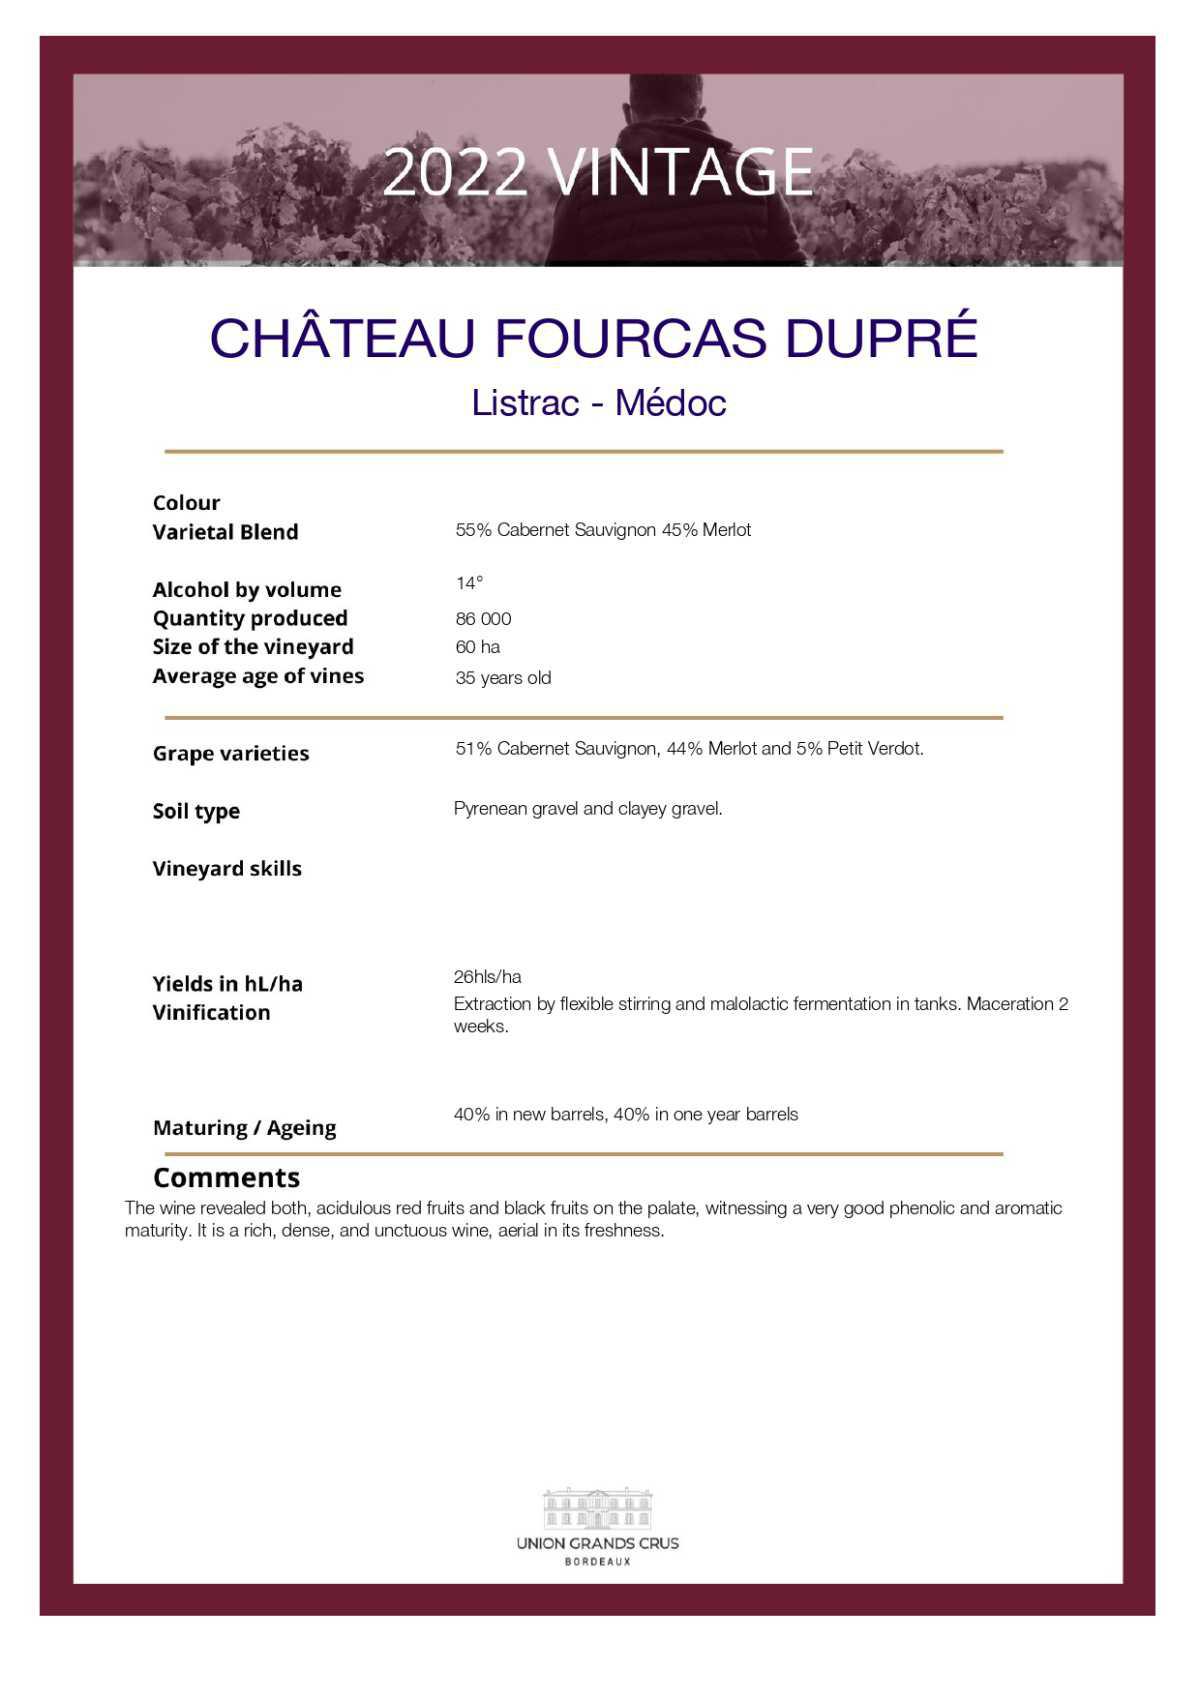  Château Fourcas Dupré